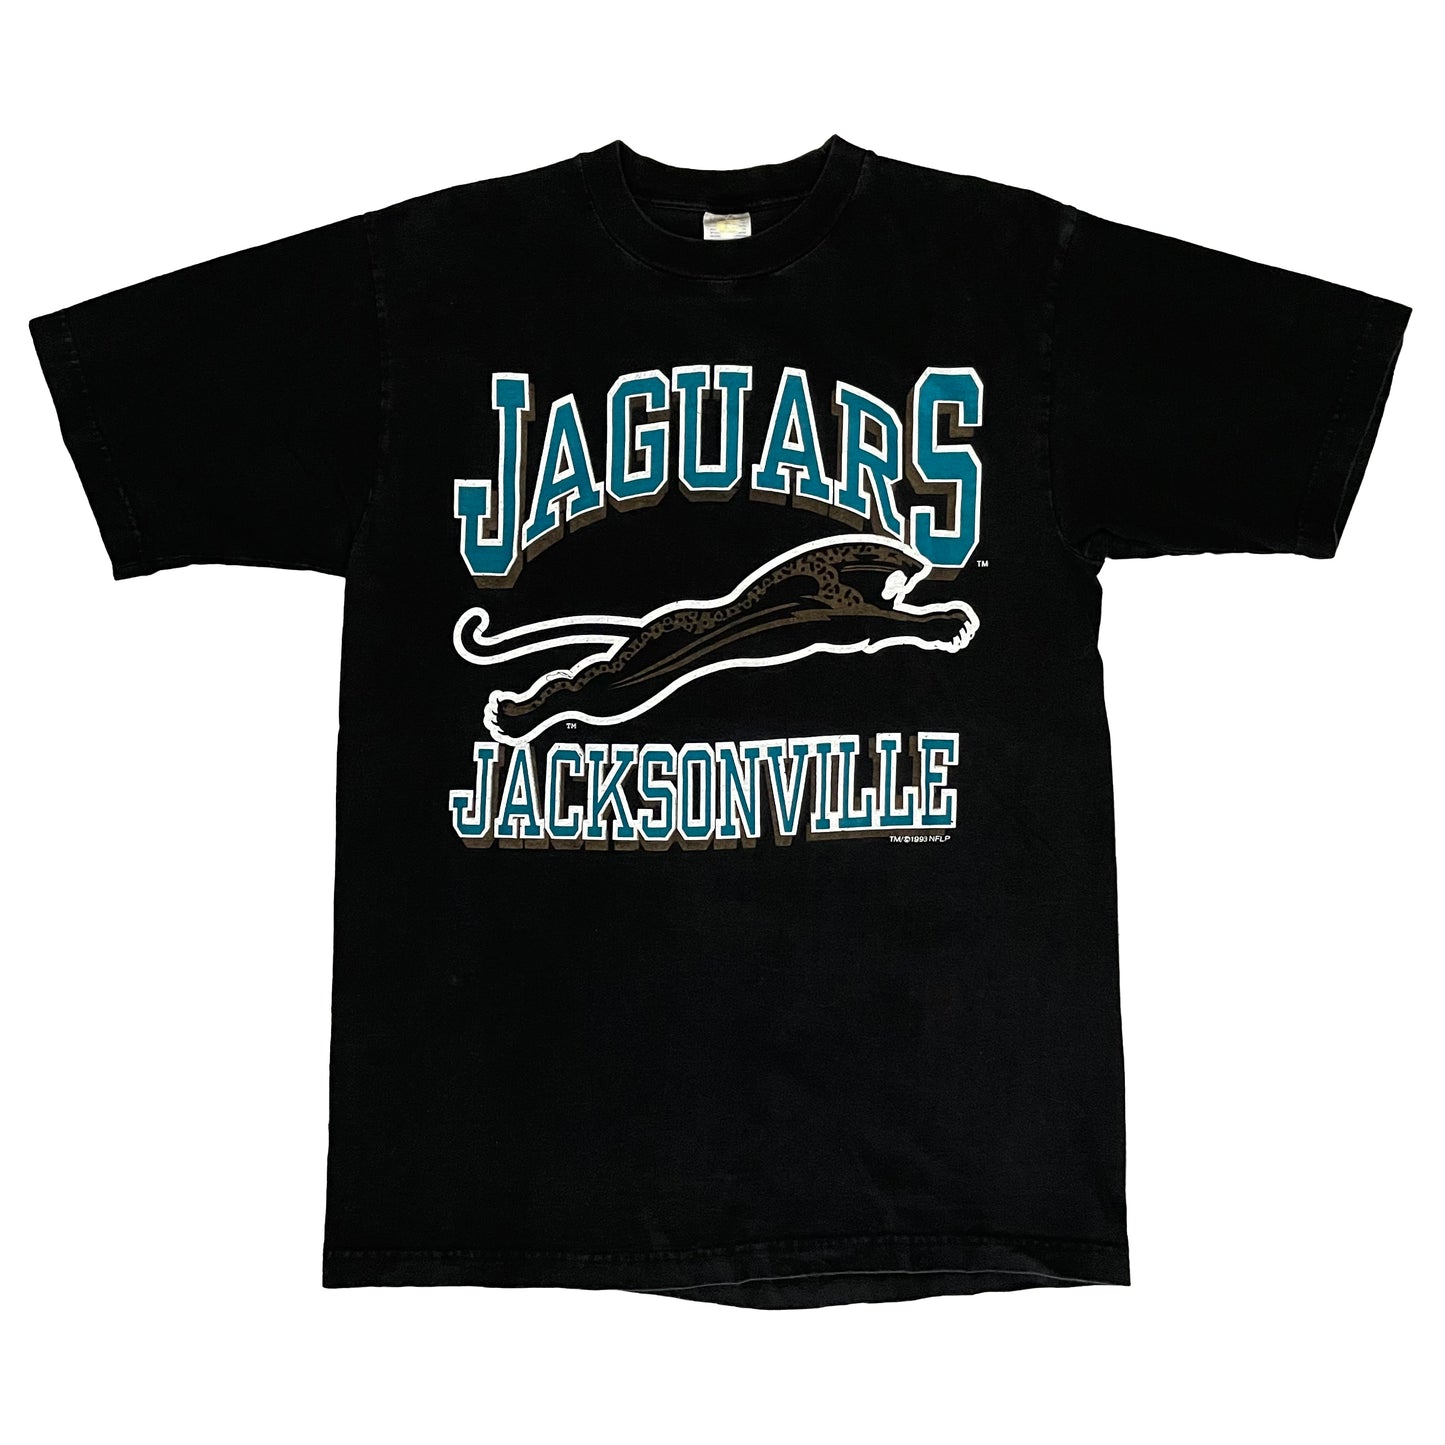 Jacksonville Jaguars 1993 banned logo shirt LARGE